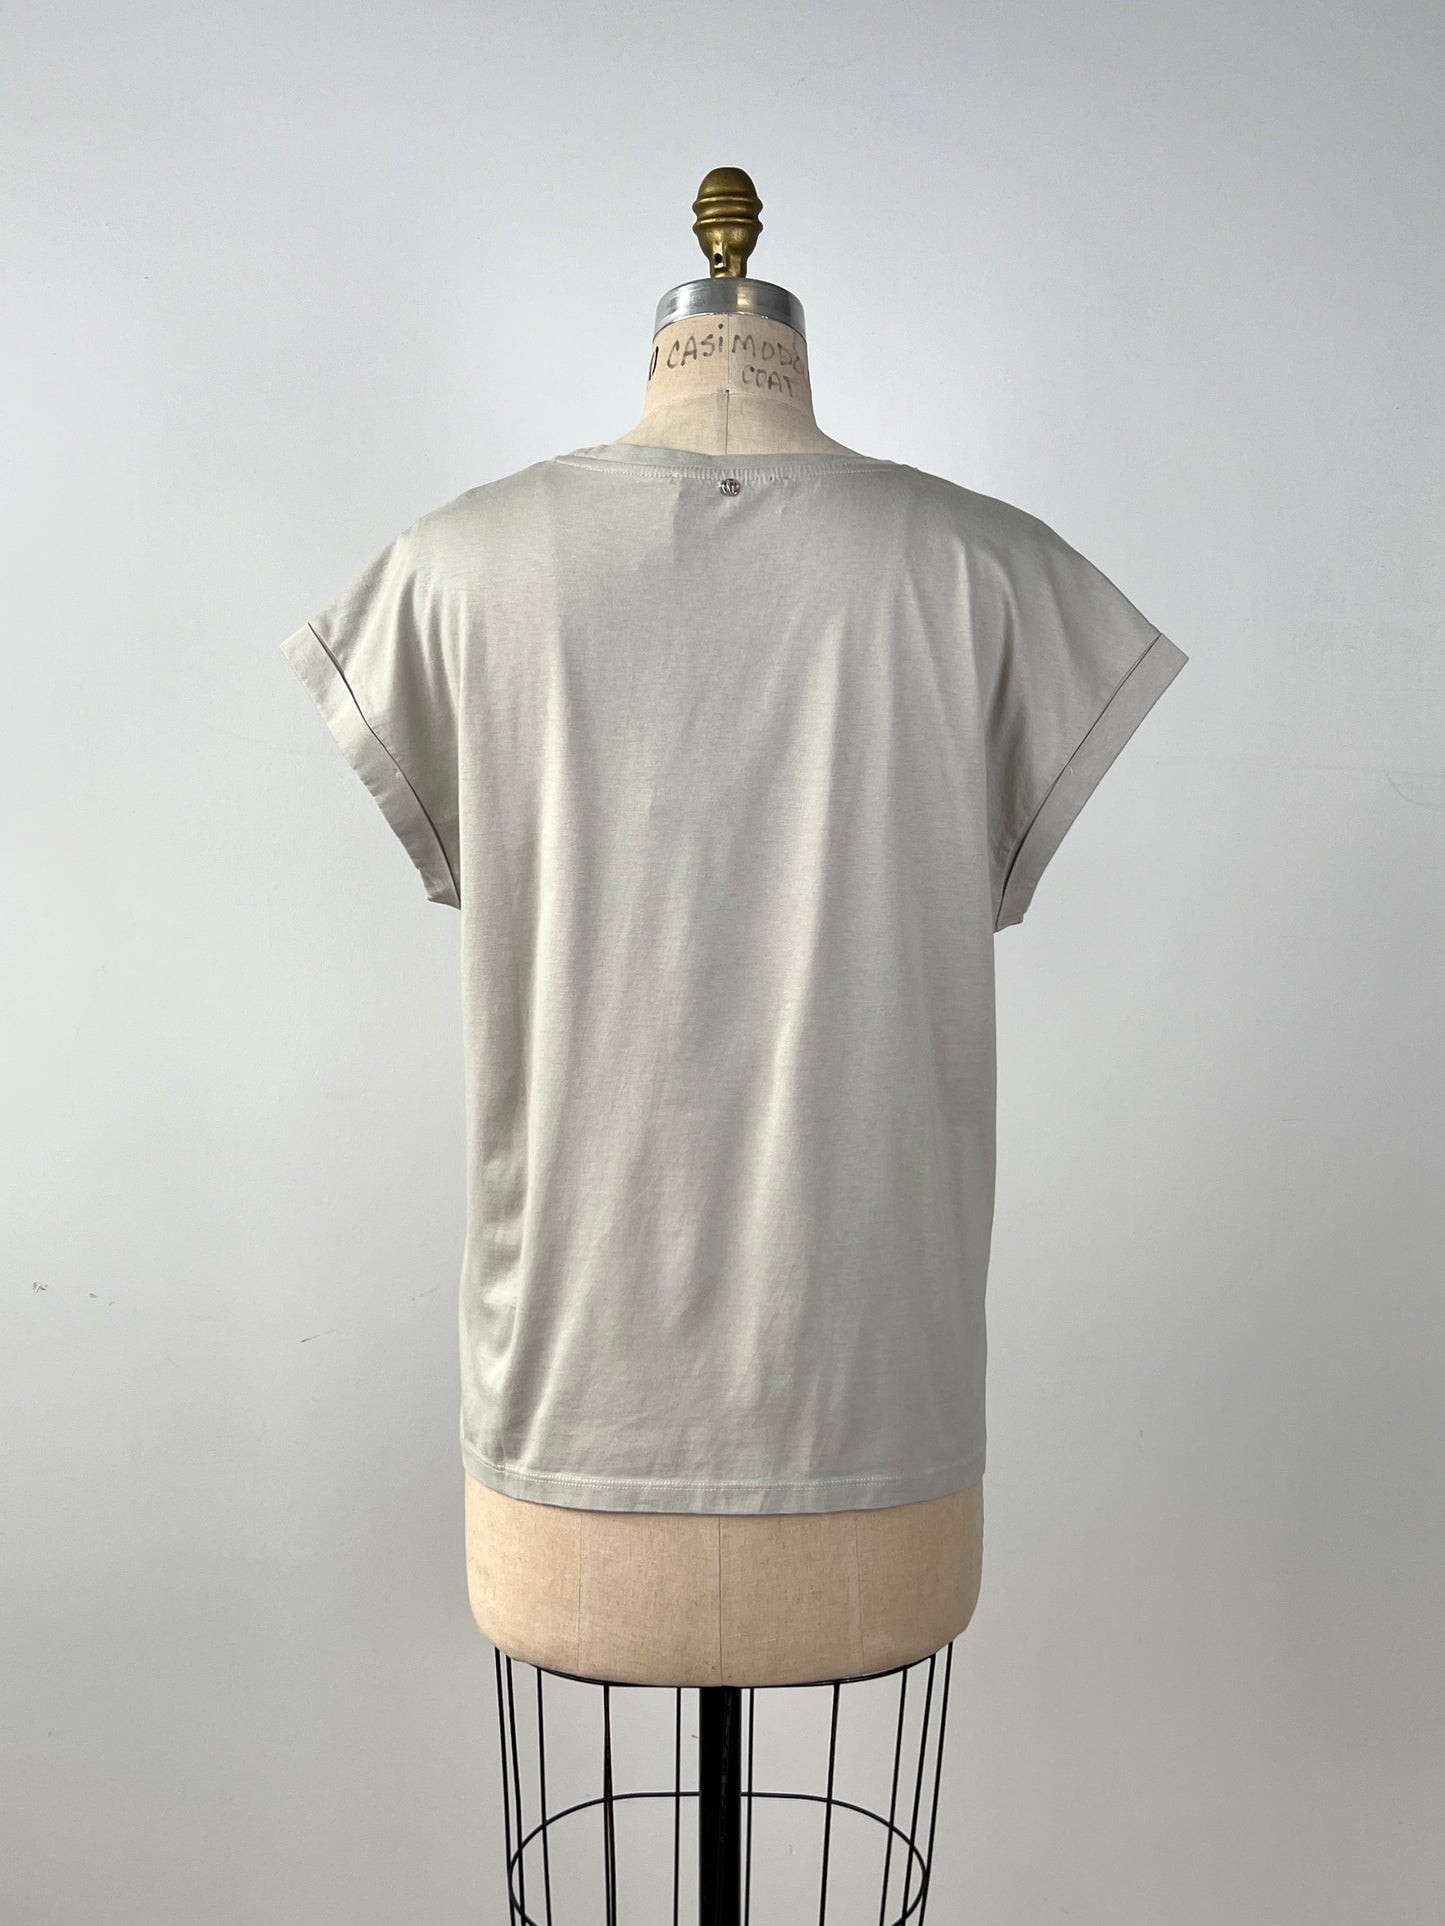 T-shirt gris argile "PARADISE FOUND" (10 et 14)